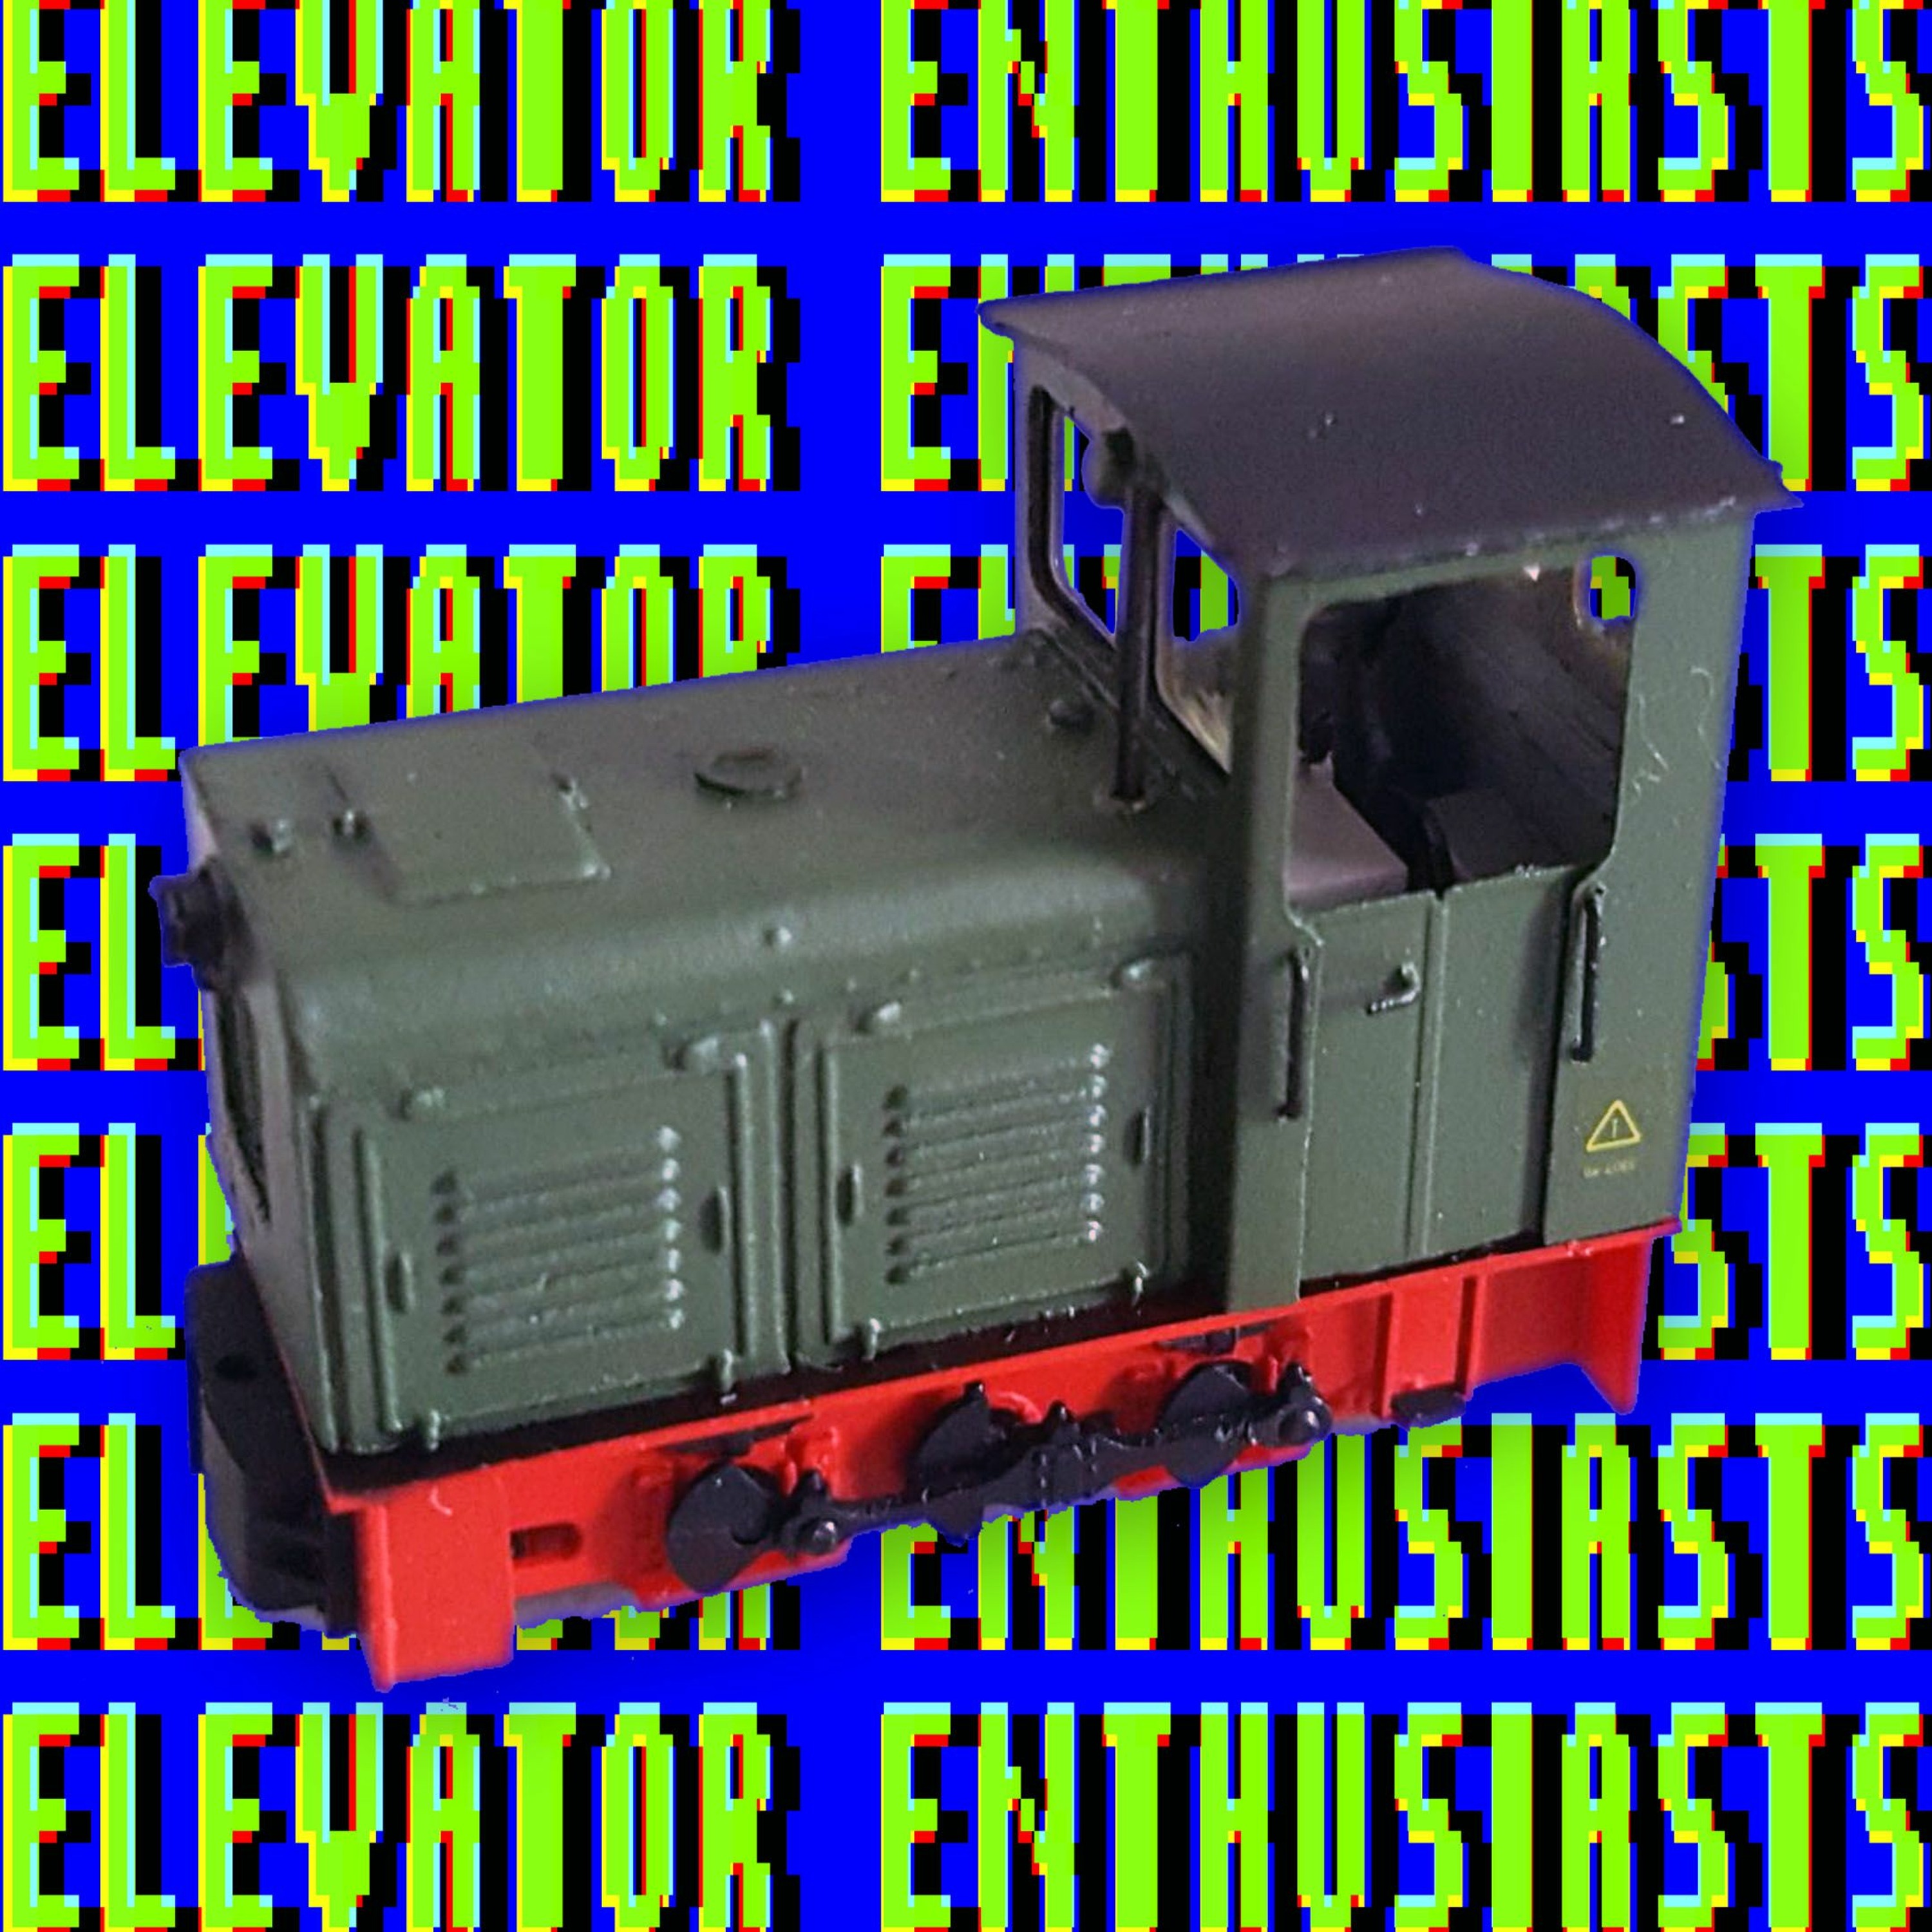 Ep21. Elevator Enthusiasts